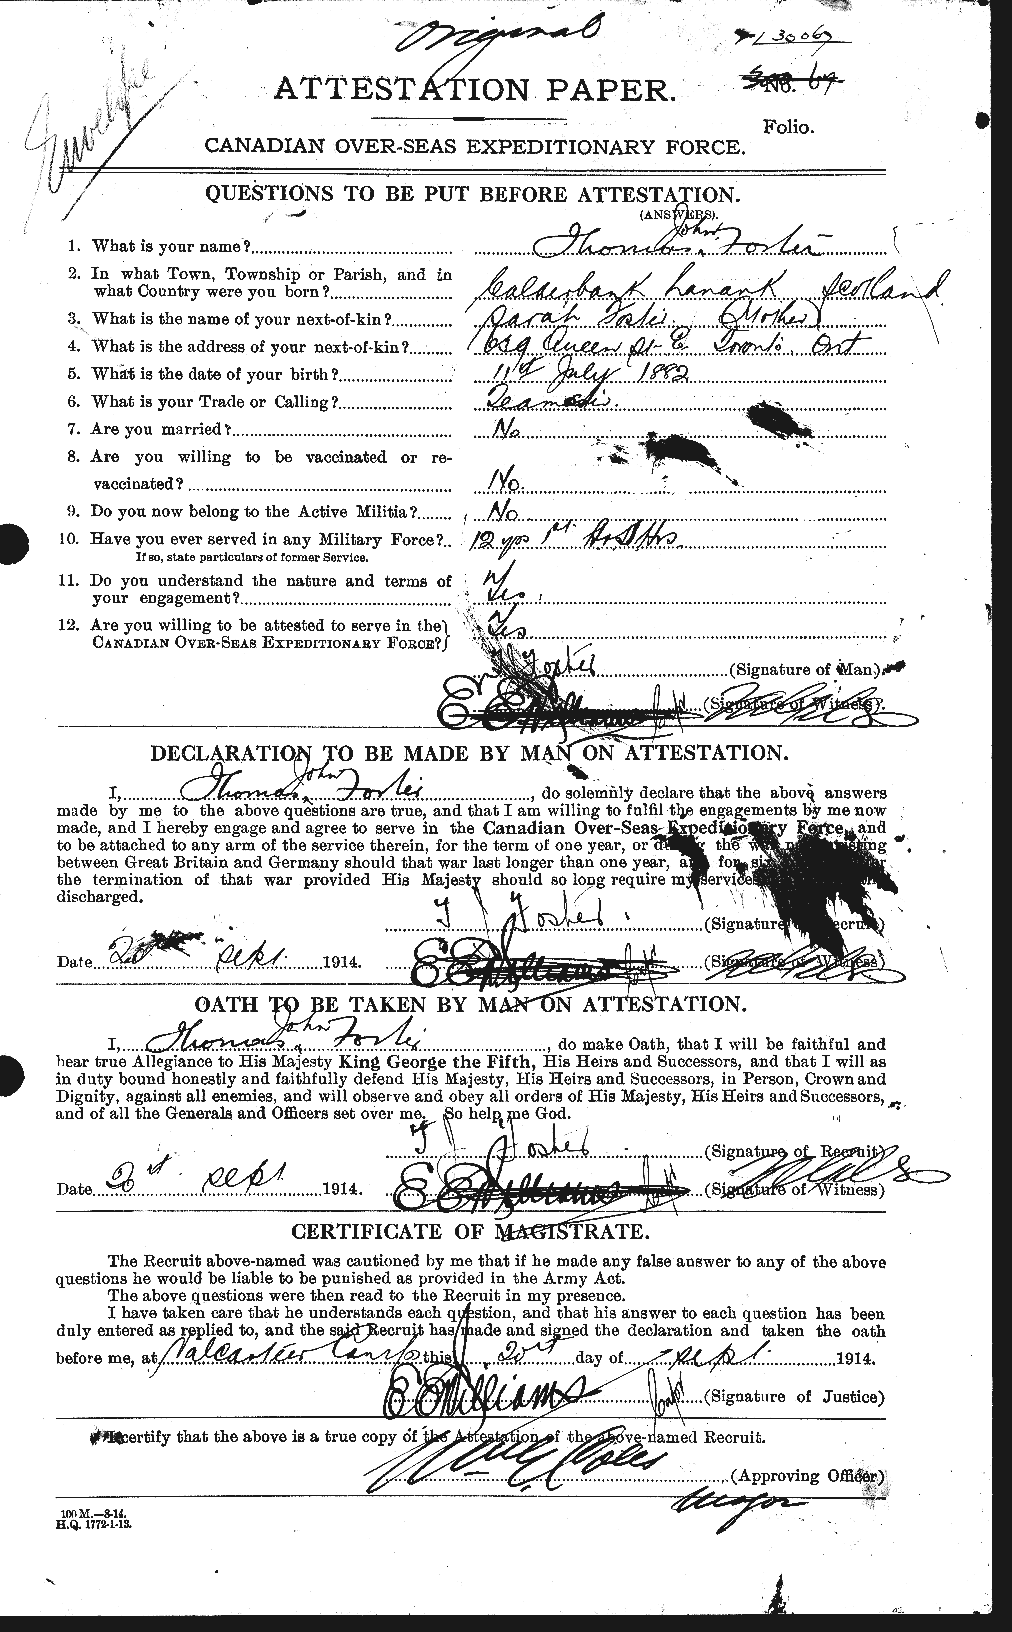 Dossiers du Personnel de la Première Guerre mondiale - CEC 335242a